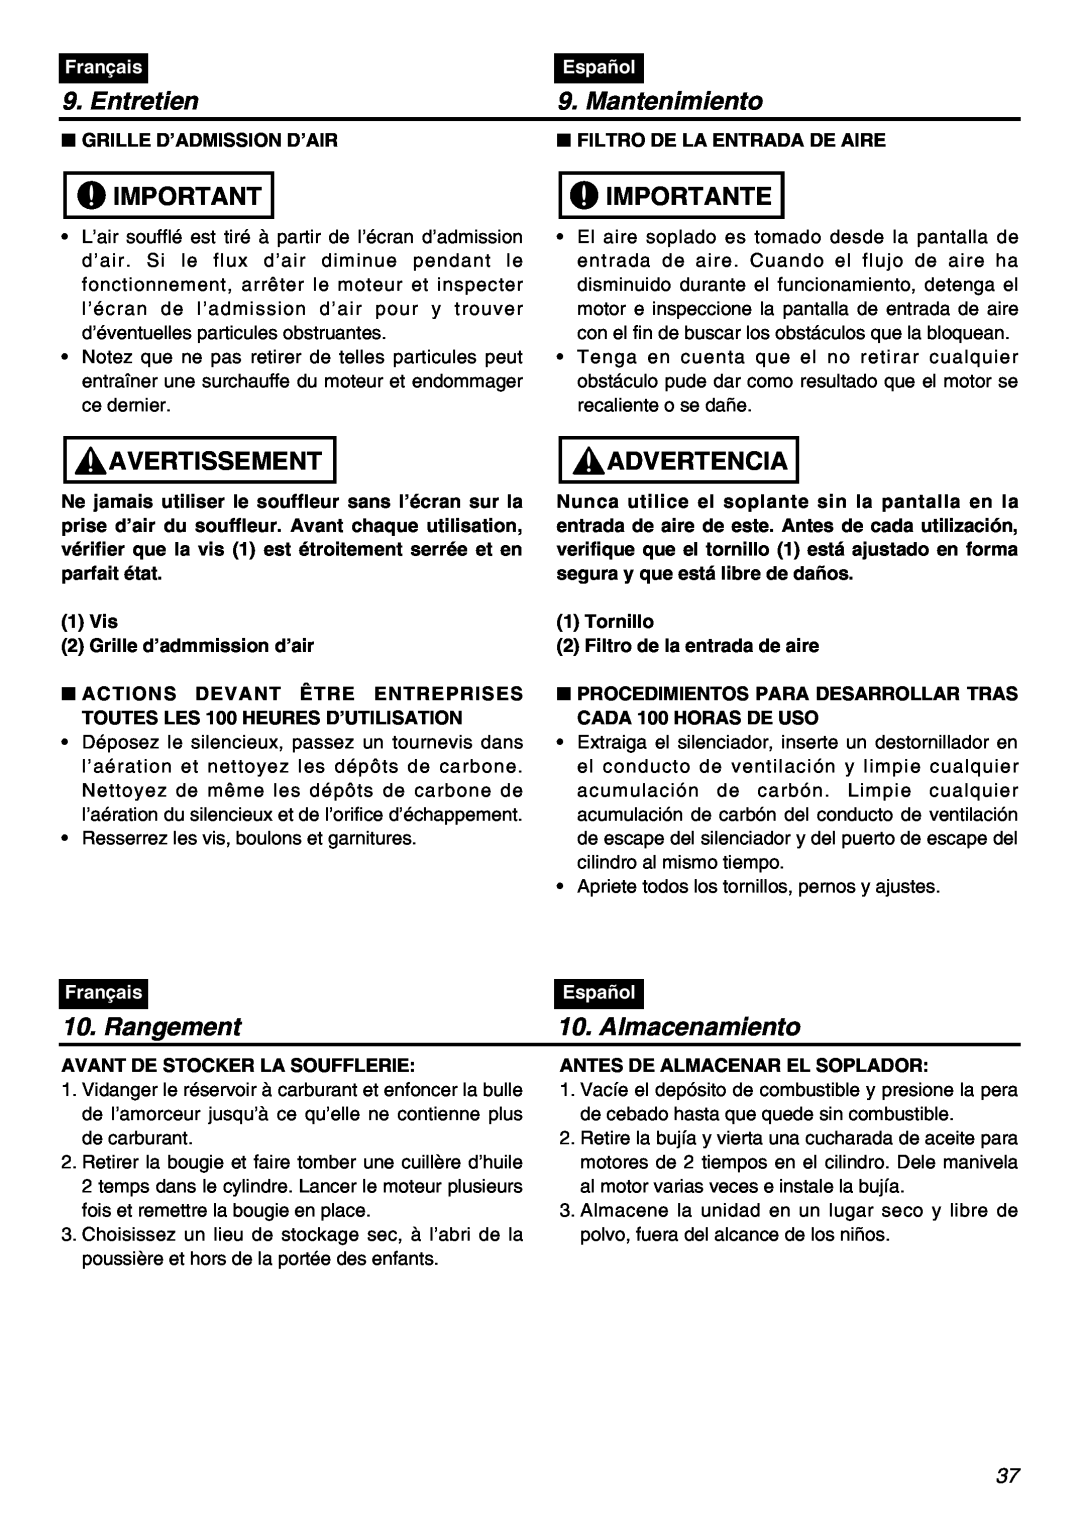 RedMax HBZ2601 manual Rangement, Almacenamiento, Entretien, Mantenimiento, Importante, Avertissement, Advertencia, Français 